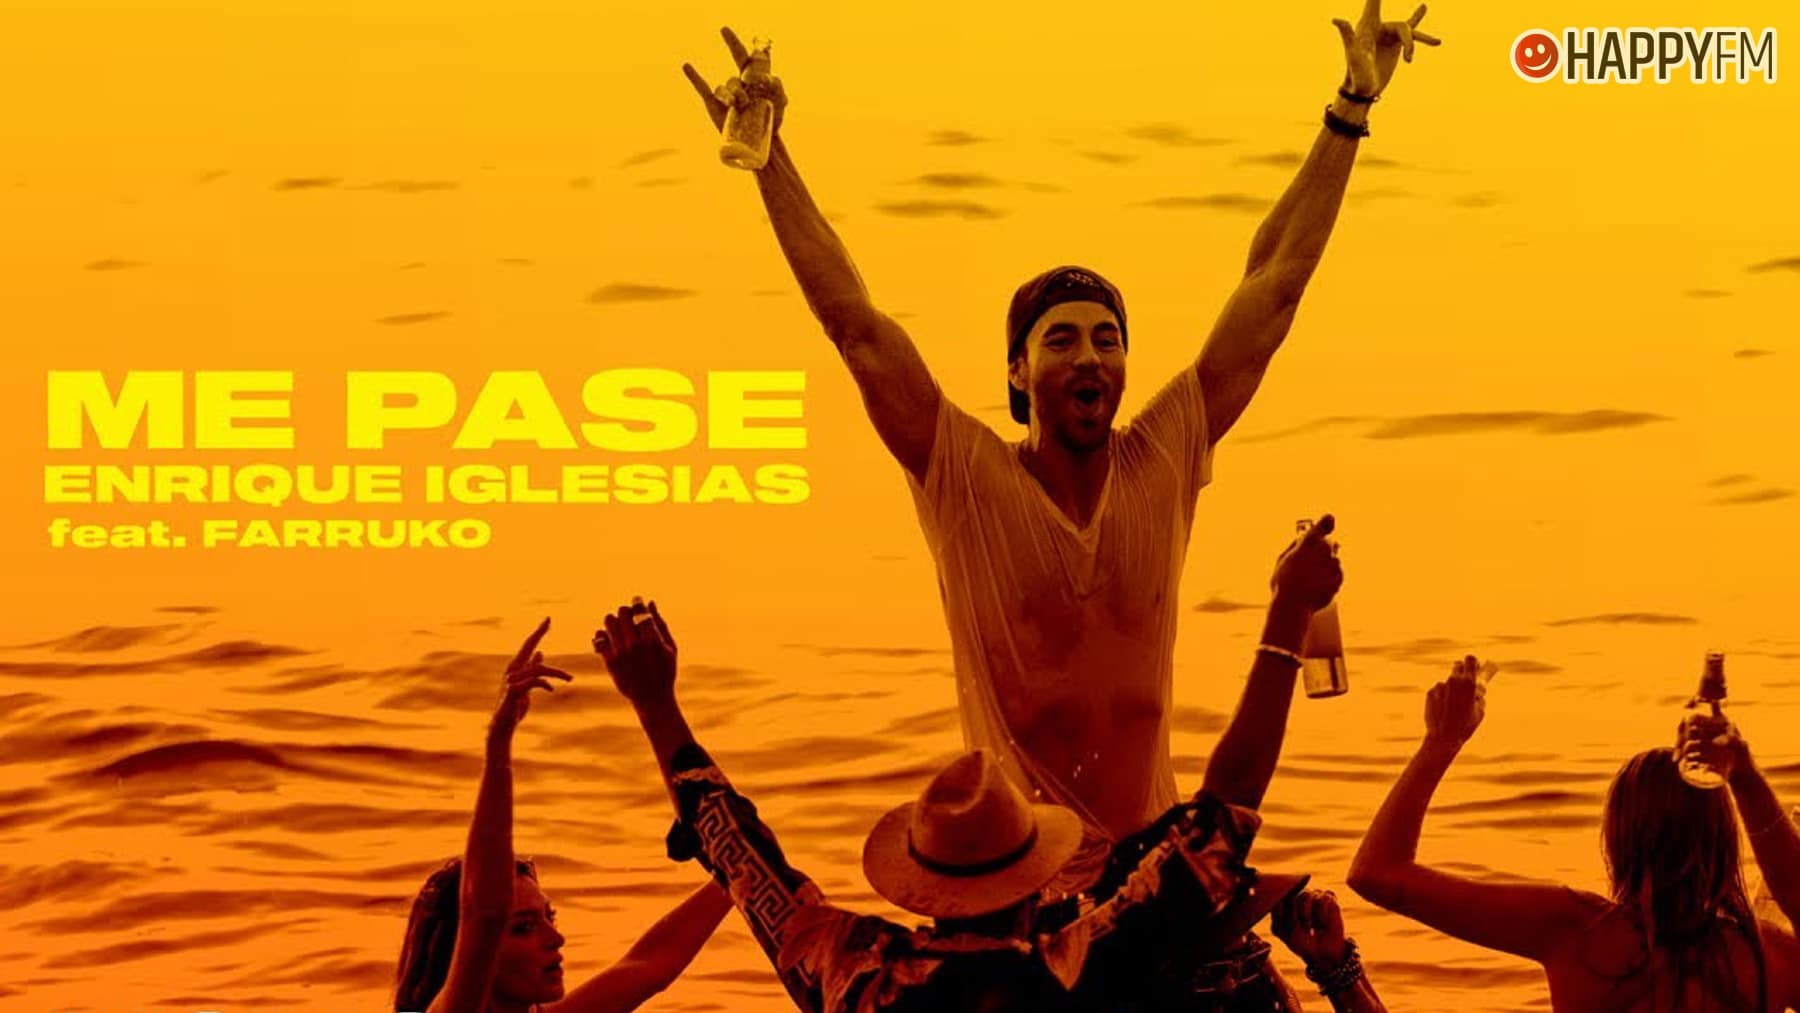 ‘Me pase’, de Enrique Iglesias y Farruko: letra y vídeo loading=